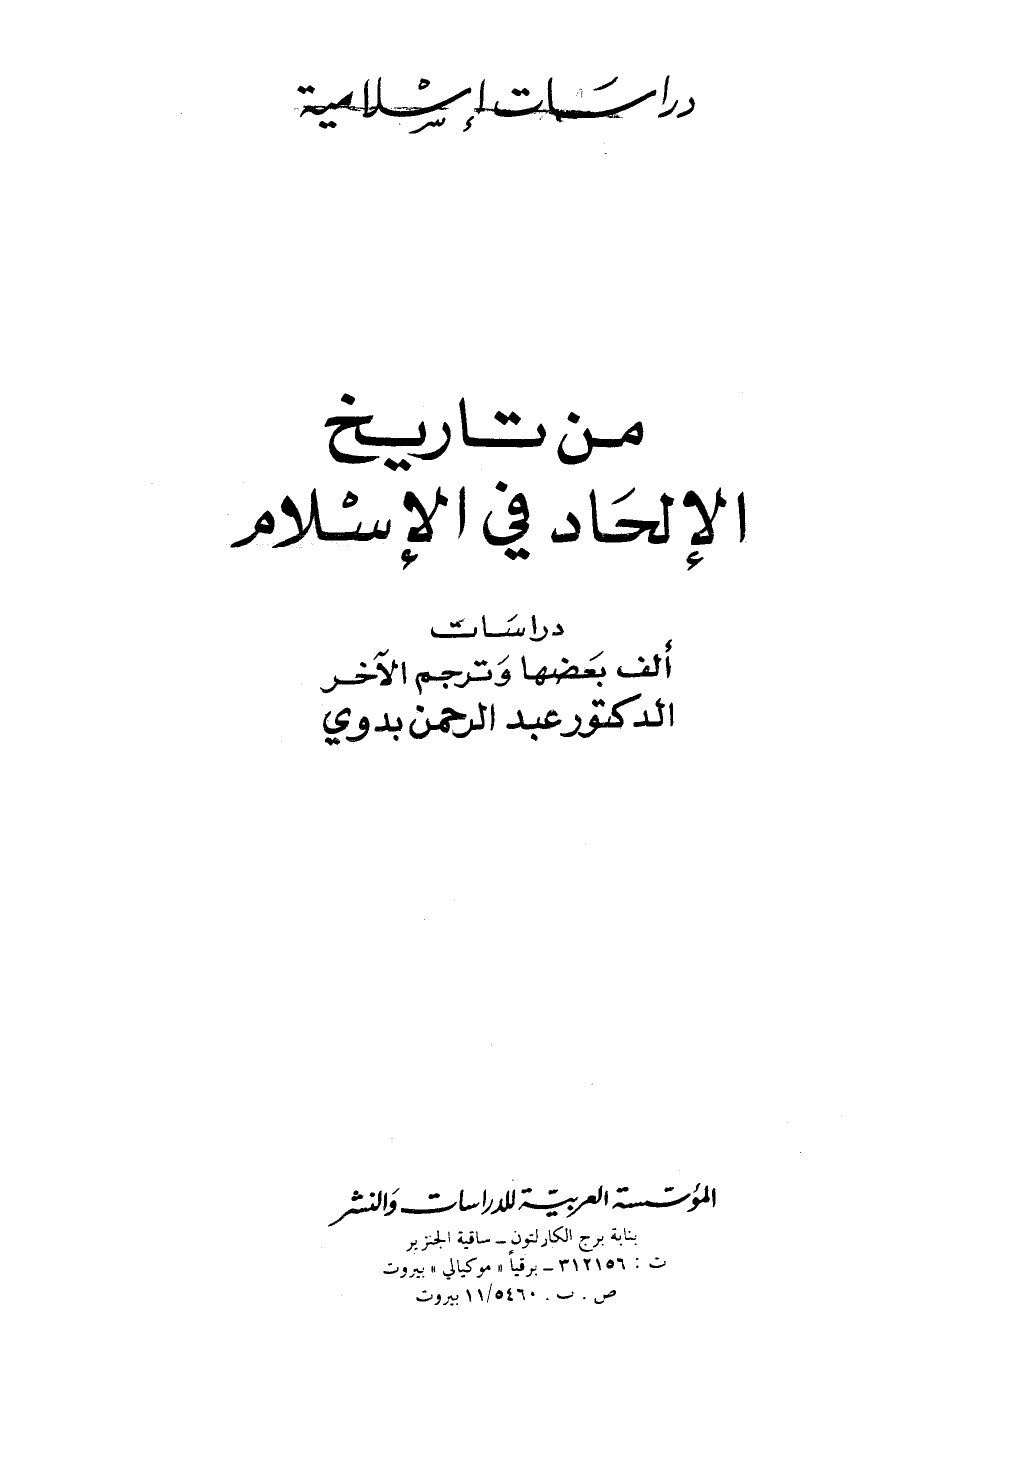 تنزيل وتحميل كتاِب من تاريخ الإلحاد في الإسلام pdf برابط مباشر مجاناً 